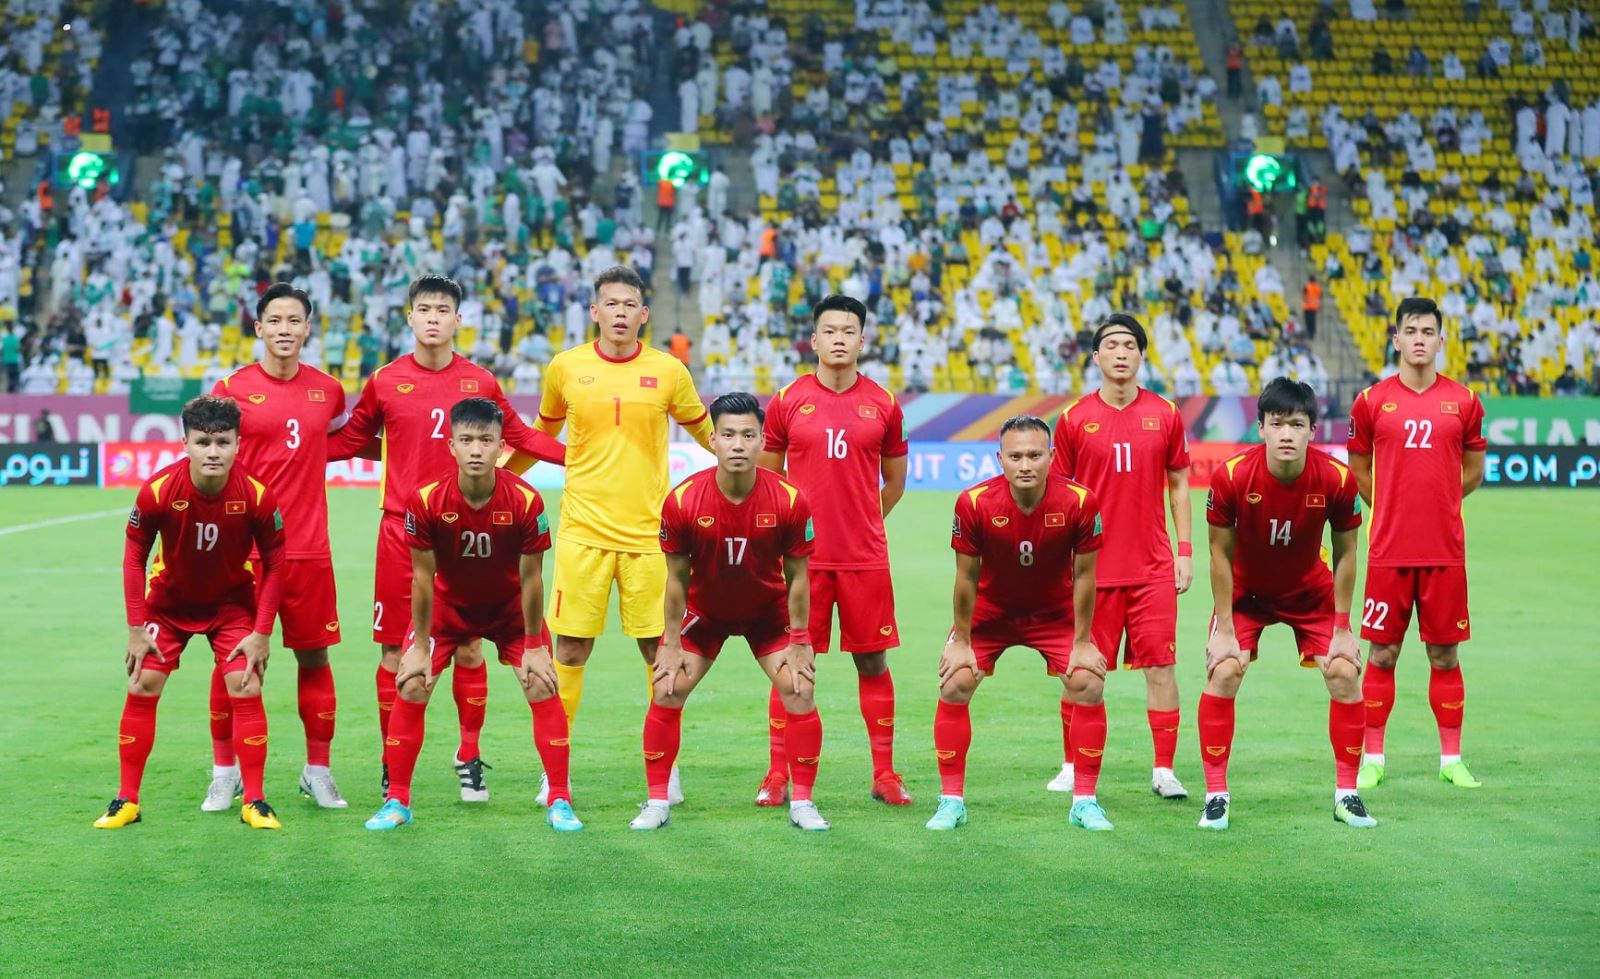 Đội hình ĐT Việt Nam vô địch AFF Cup 2018 rơi rụng quá nửa bởi 'bão' chấn thương 1